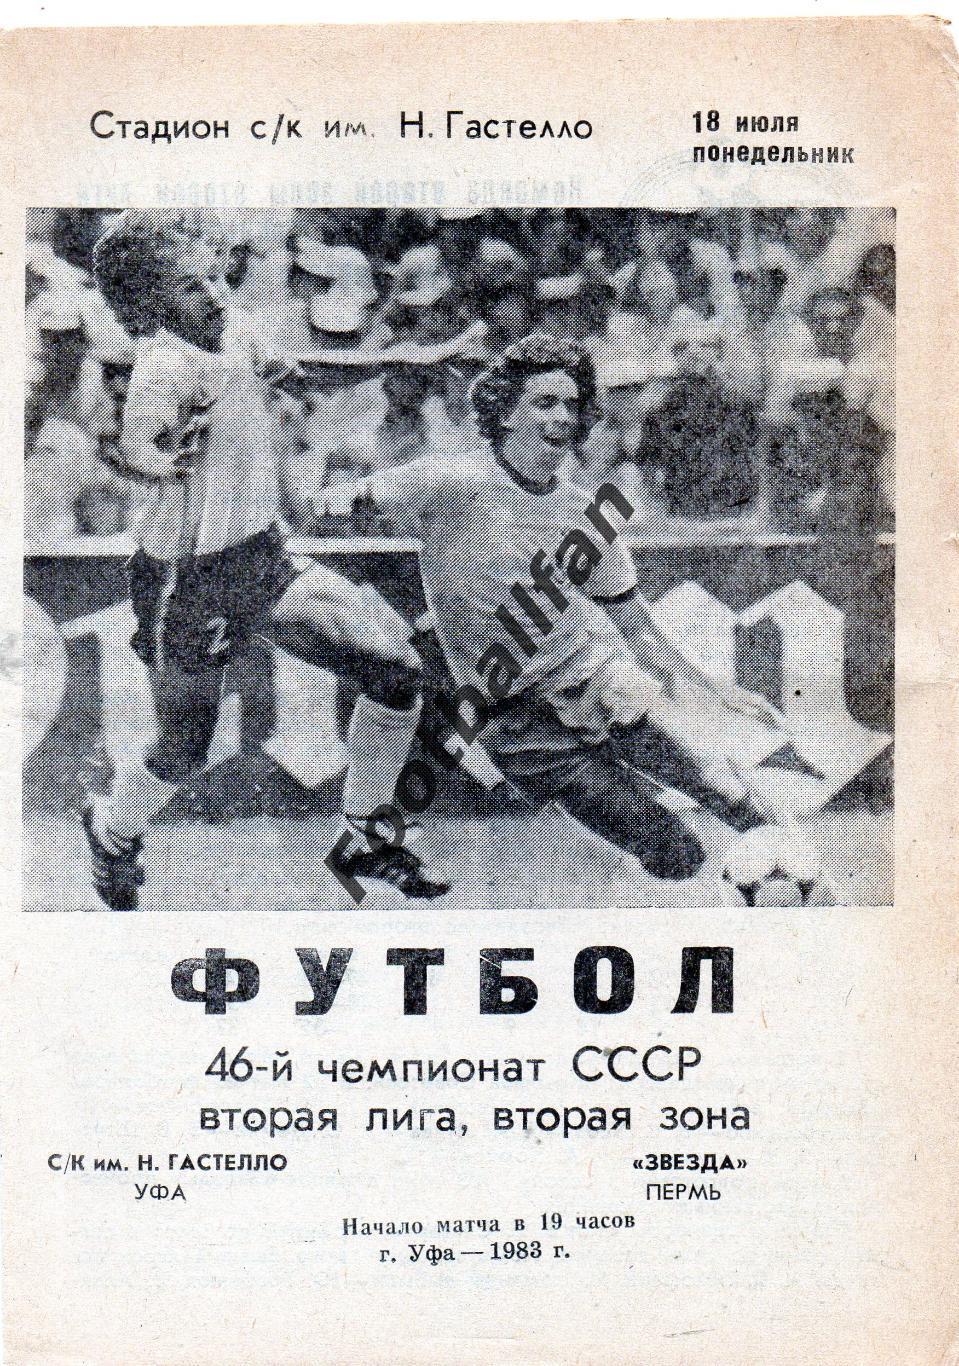 СК имени Н.Гастелло Уфа - Звезда Пермь 18.07.1983